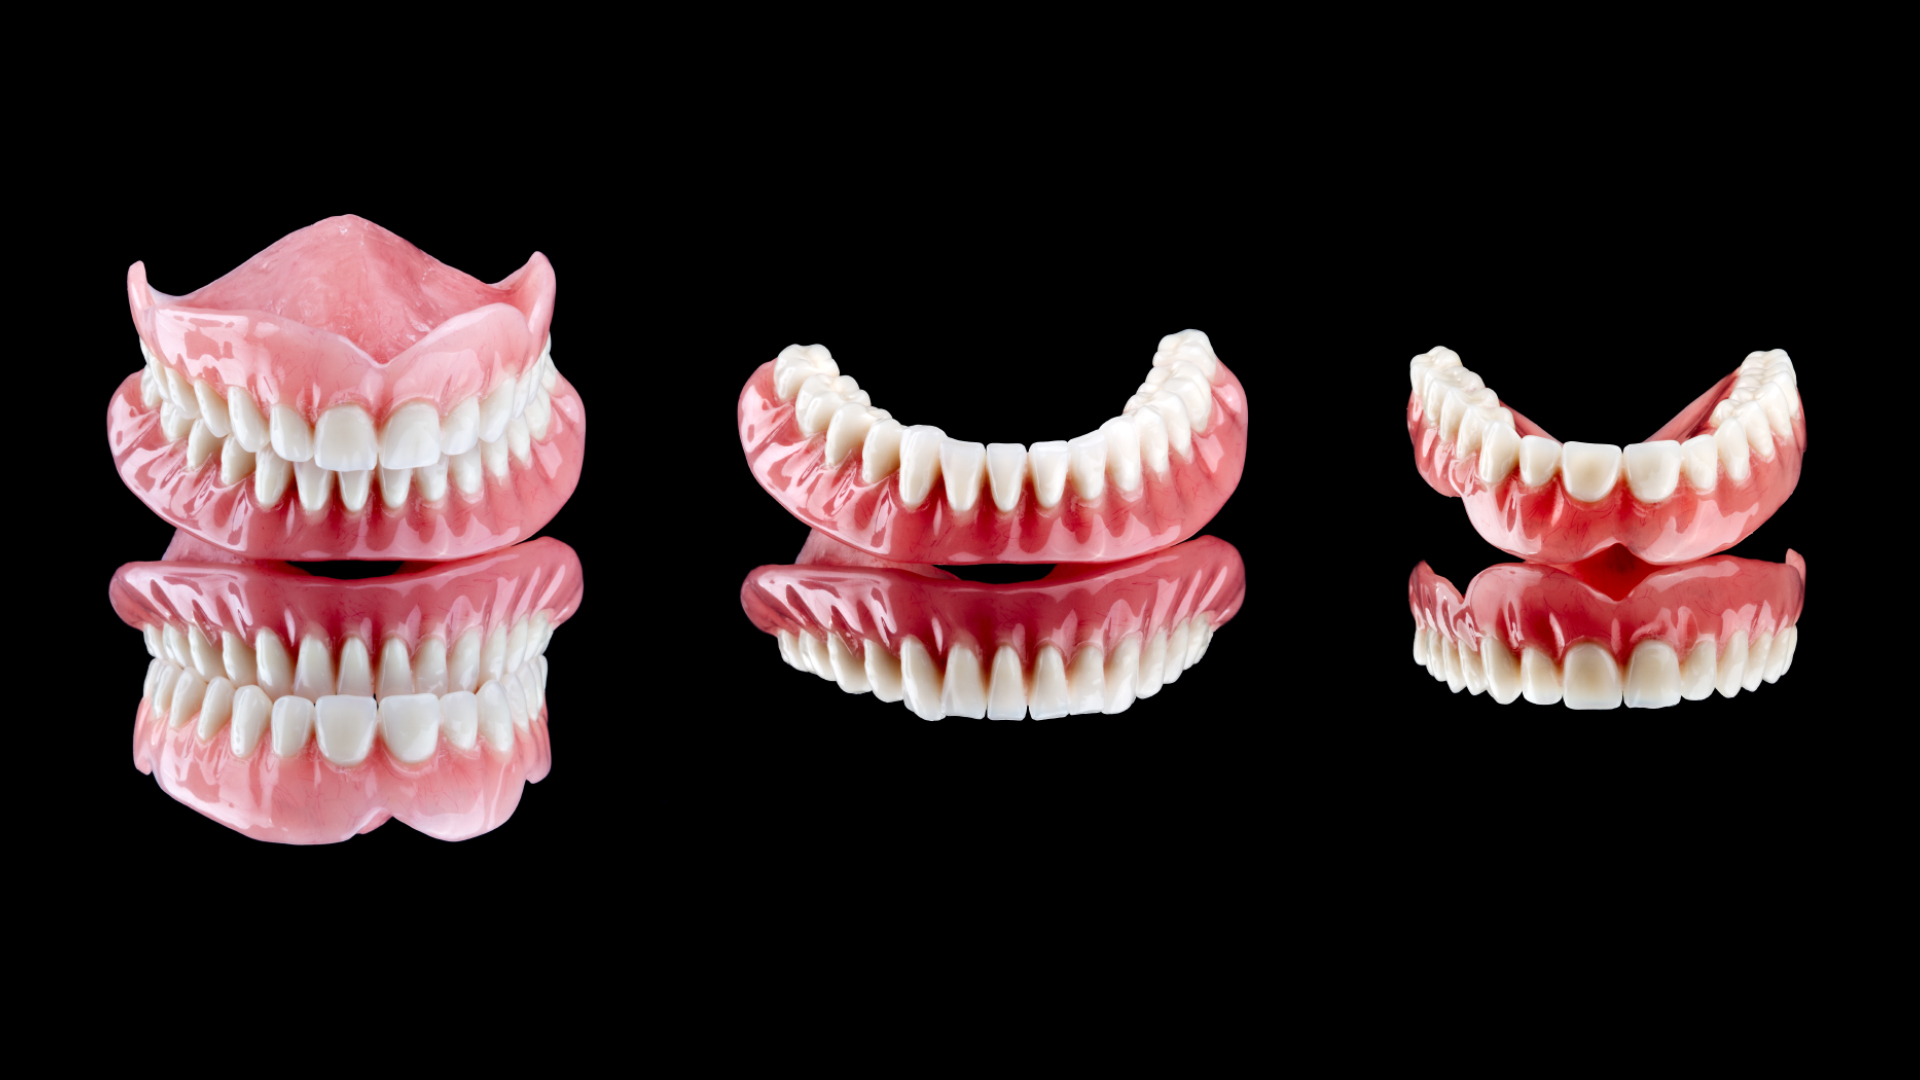 Prothèses dentaires : types, prix, remboursement - Le guide complet